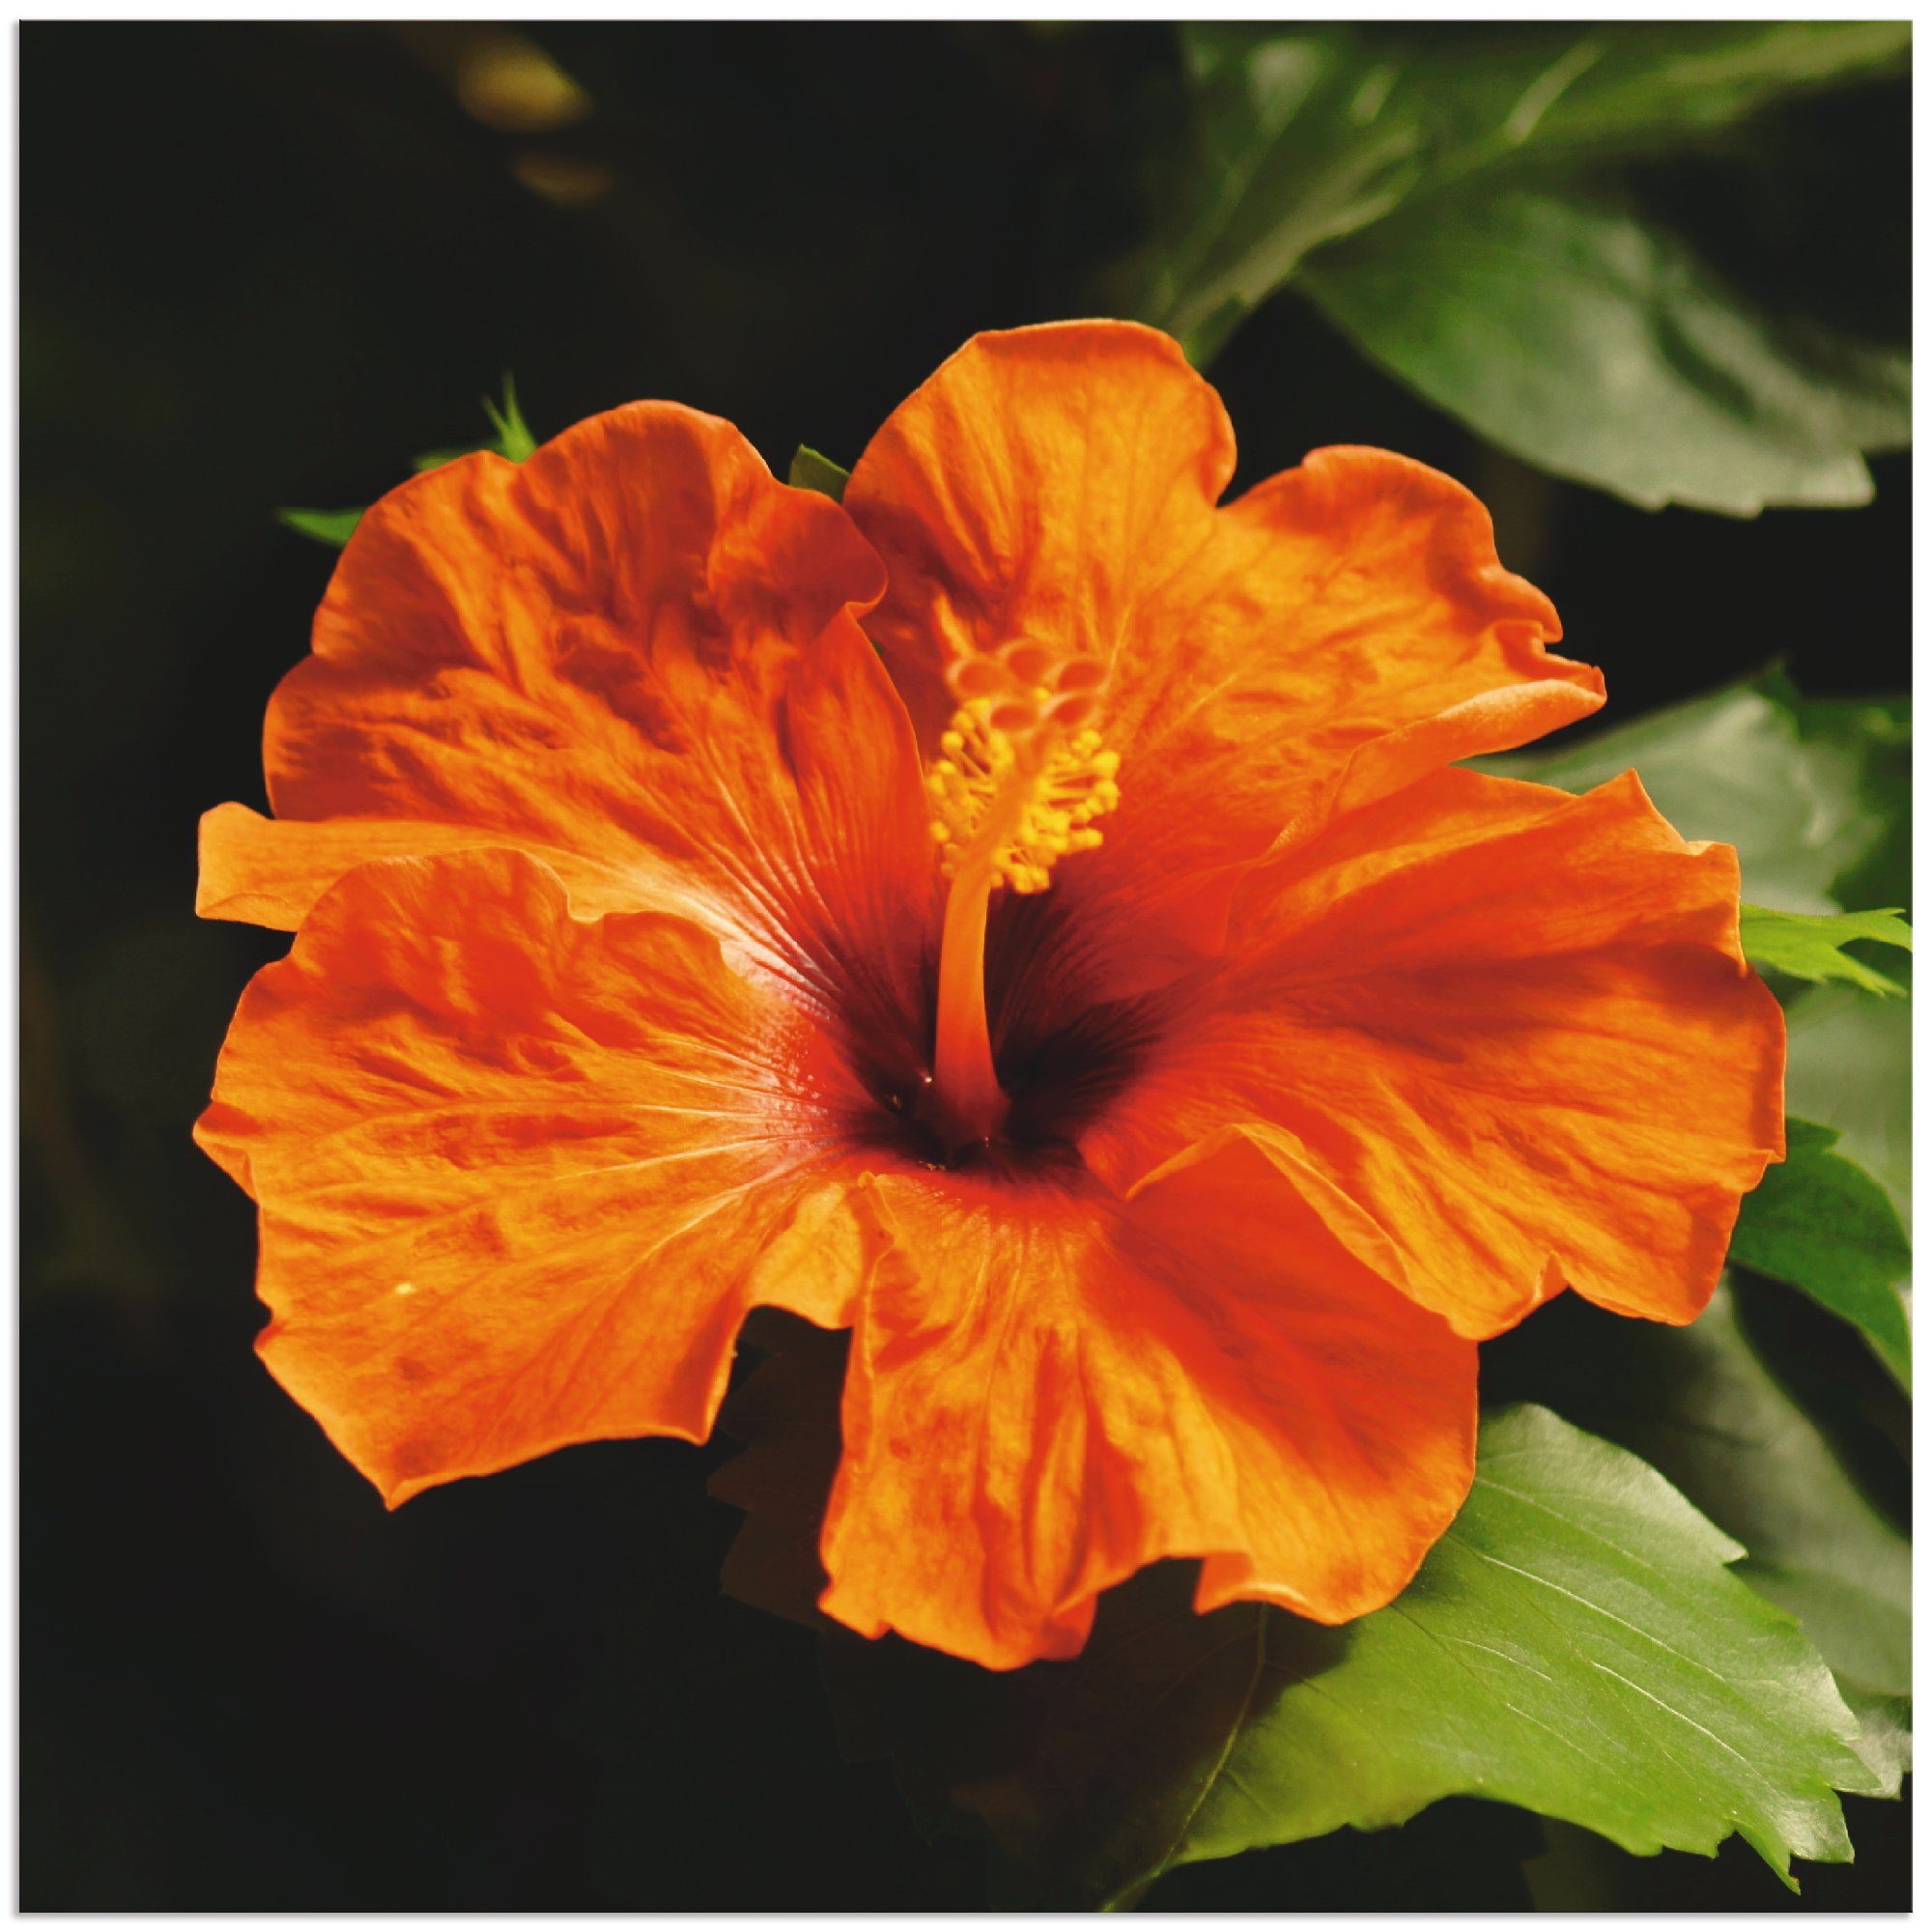 Artland Artprint Oranje hibiscus in vele afmetingen & productsoorten - artprint van aluminium / artprint voor buiten, artprint op linnen, poster, muursticker / wandfolie ook geschi